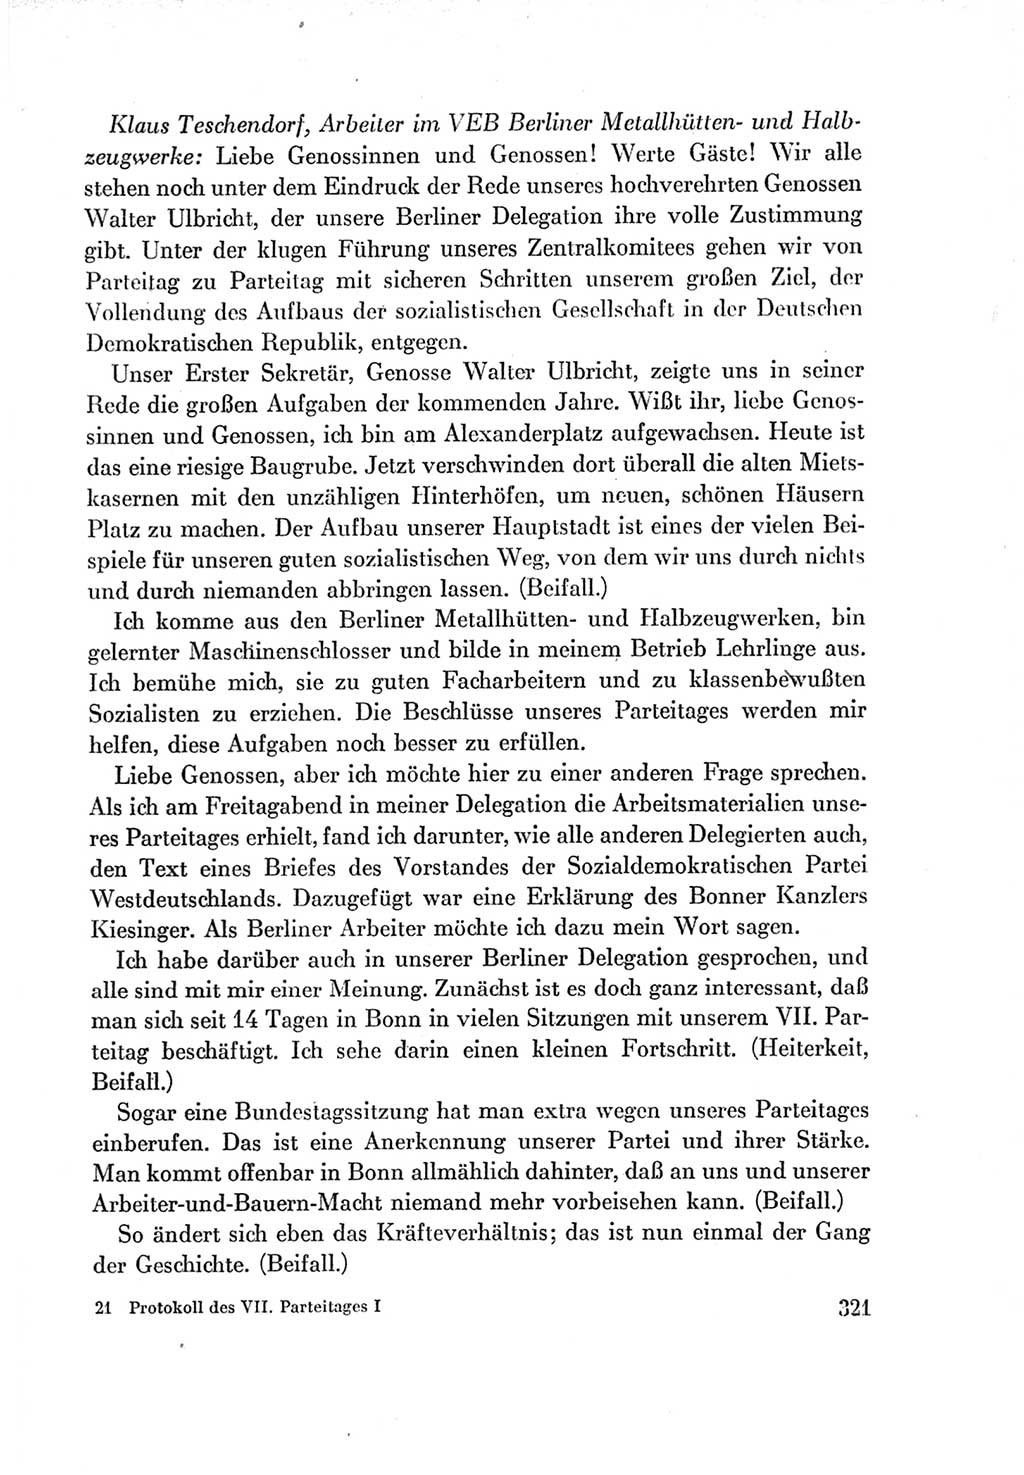 Protokoll der Verhandlungen des Ⅶ. Parteitages der Sozialistischen Einheitspartei Deutschlands (SED) [Deutsche Demokratische Republik (DDR)] 1967, Band Ⅰ, Seite 321 (Prot. Verh. Ⅶ. PT SED DDR 1967, Bd. Ⅰ, S. 321)